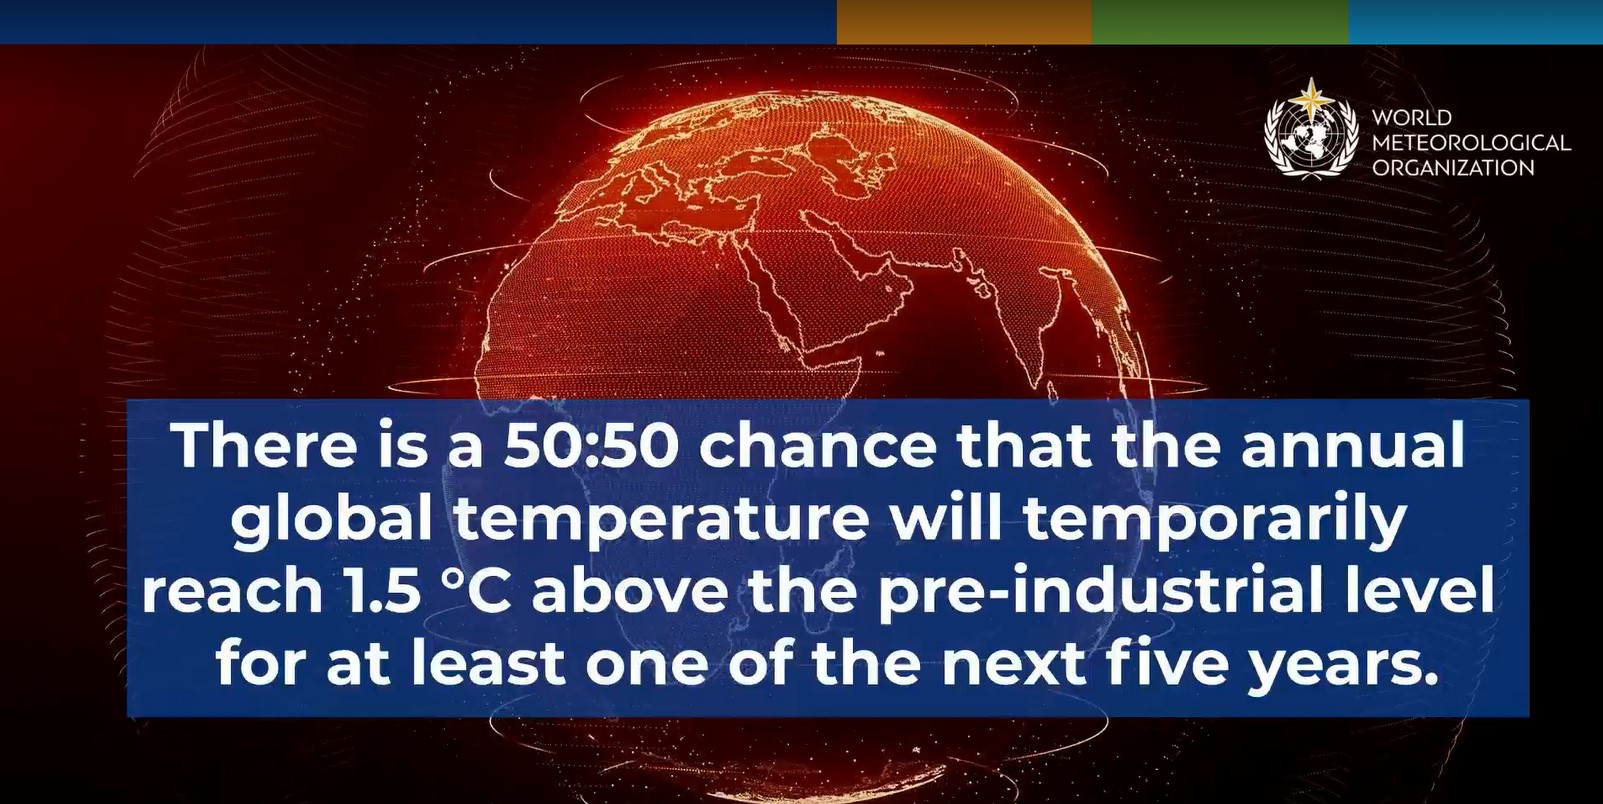 世界气象组织：未来五年全球气温暂时达到1.5摄氏度阈值的概率为50:50